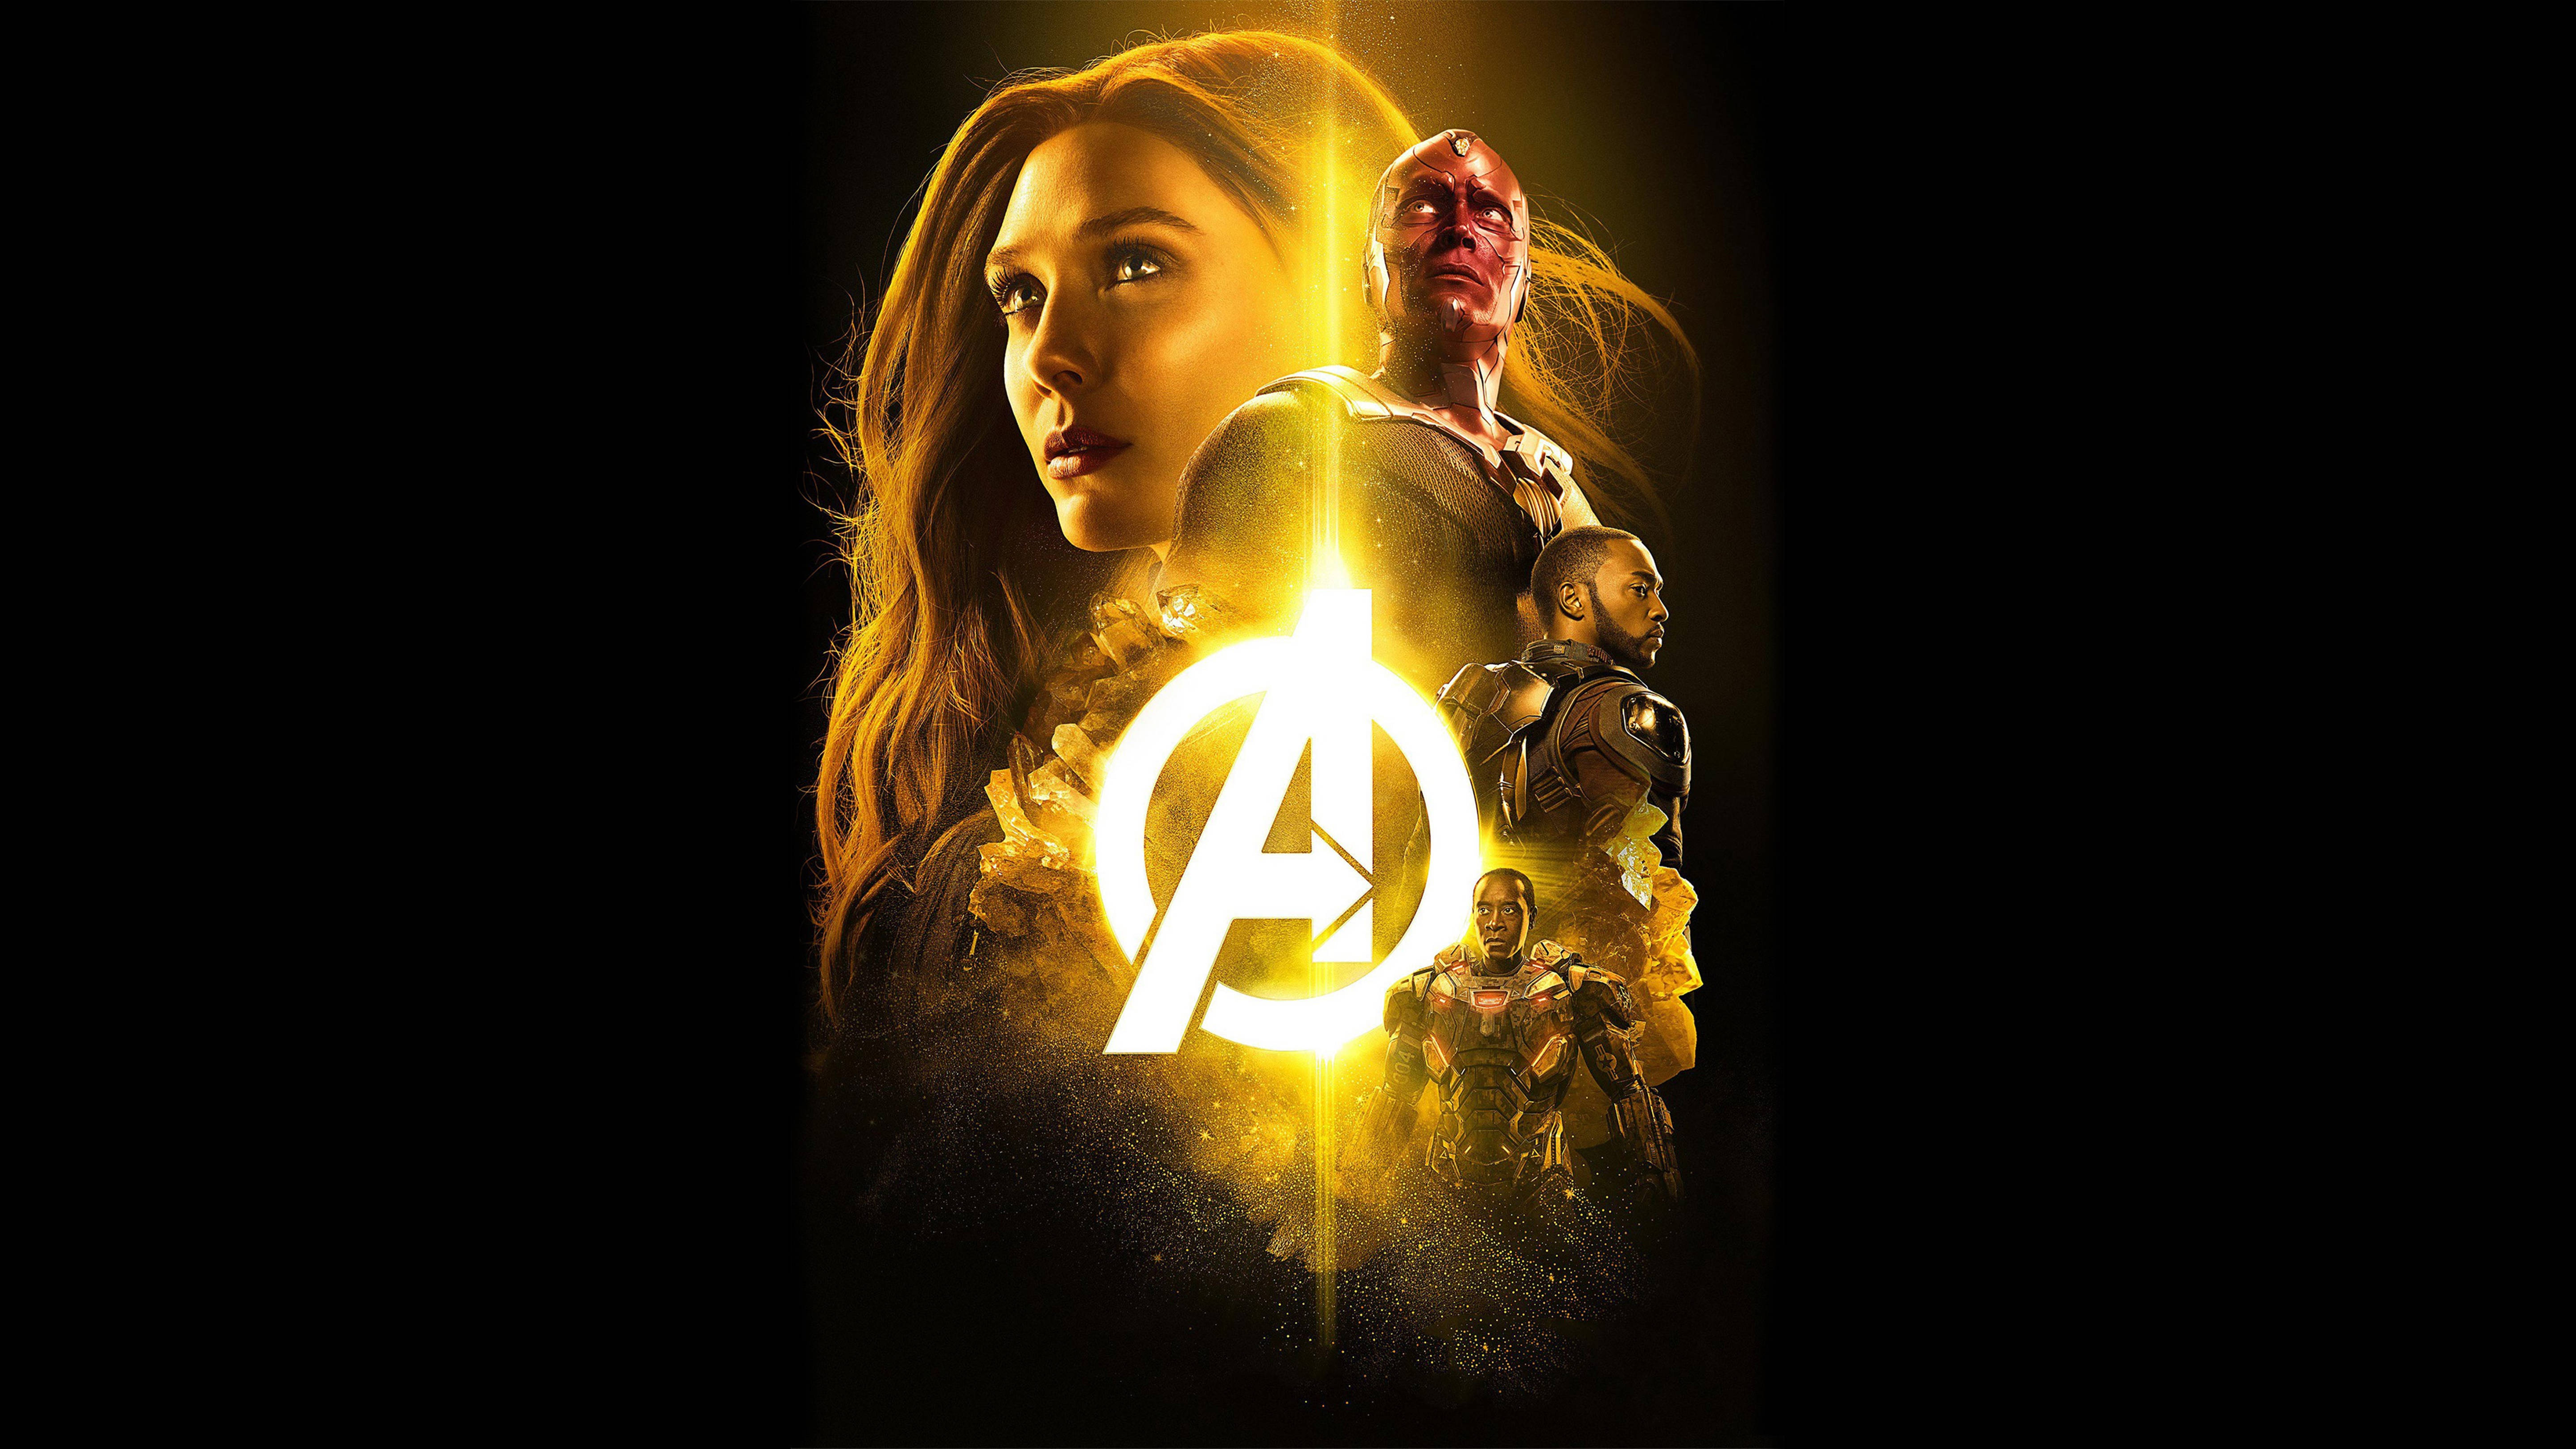 Wanda Avengers Poster 4K Wallpaper